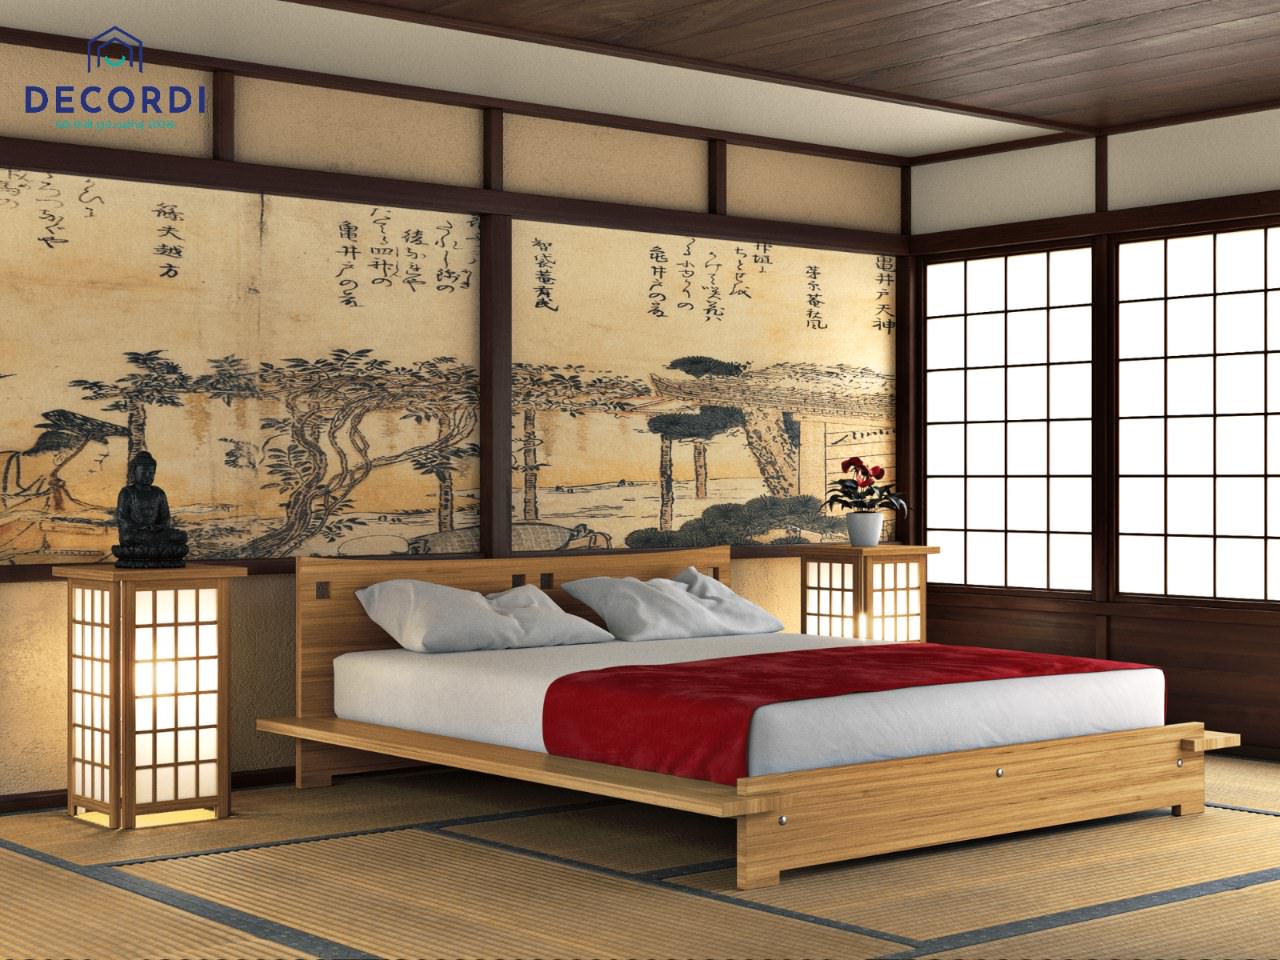 Phòng ngủ truyền thống của người Nhật Bản xưa